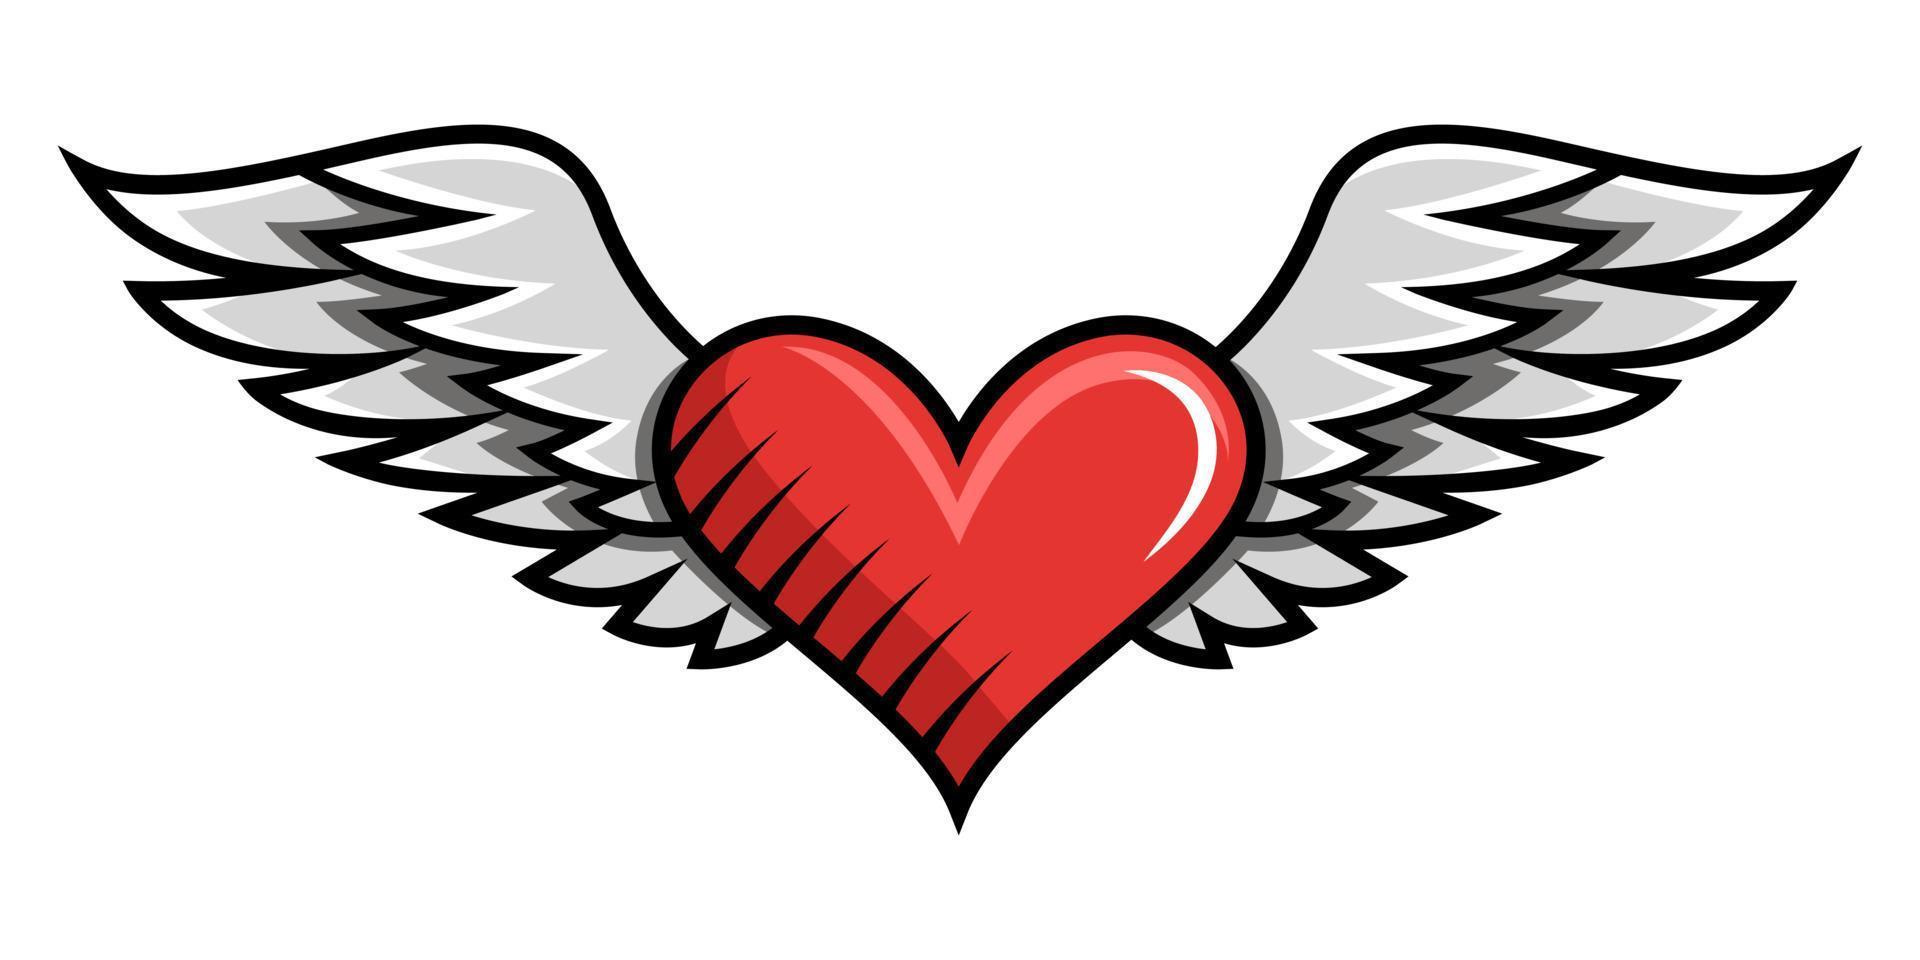 dessin coeur avec des ailes dans un style rétro vecteur